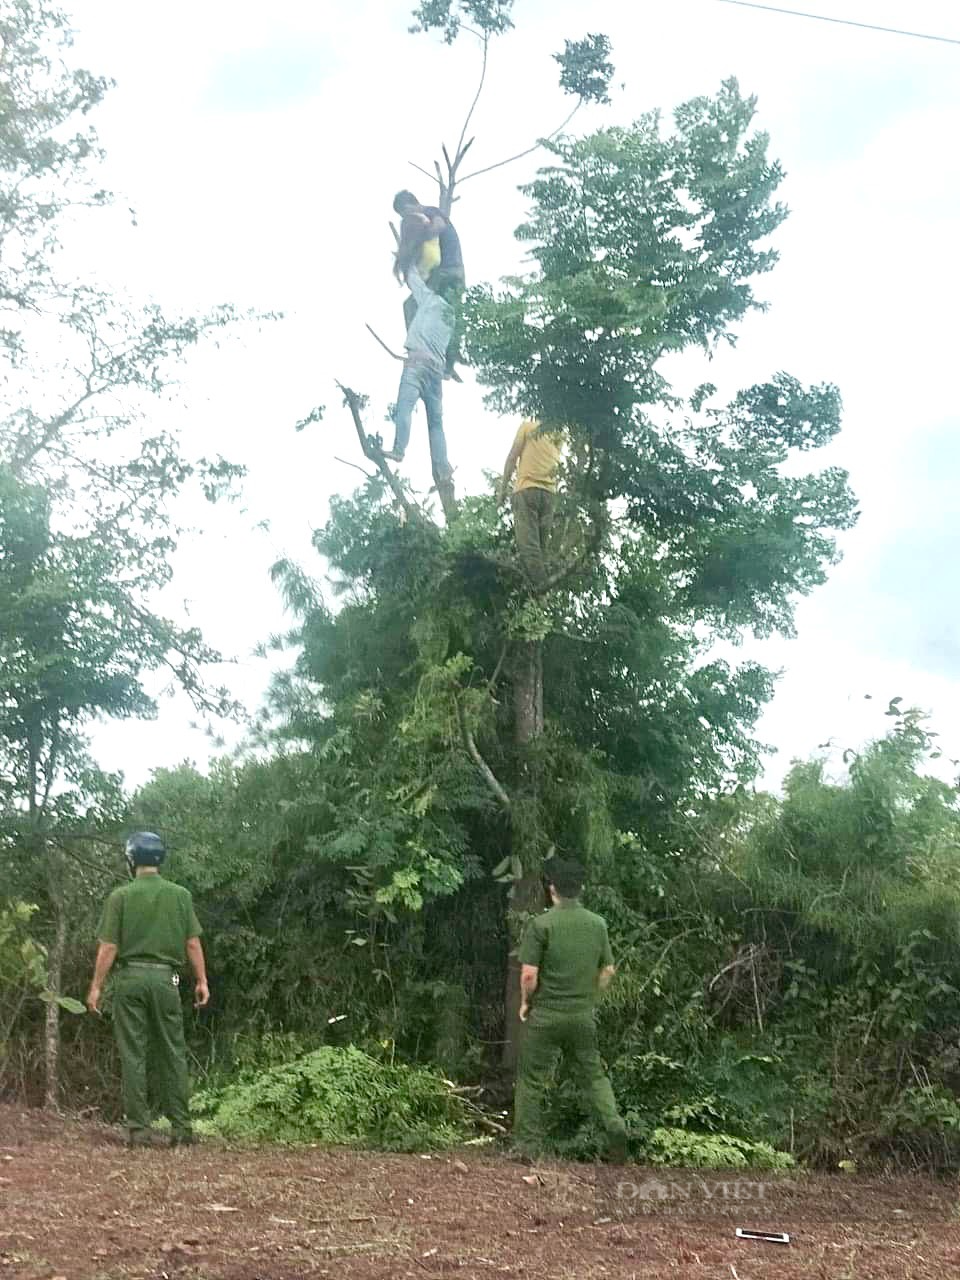 Đắk Lắk: Người phụ nữ bị điện giật chết trên cây khi đang hái lá cho dê - Ảnh 1.